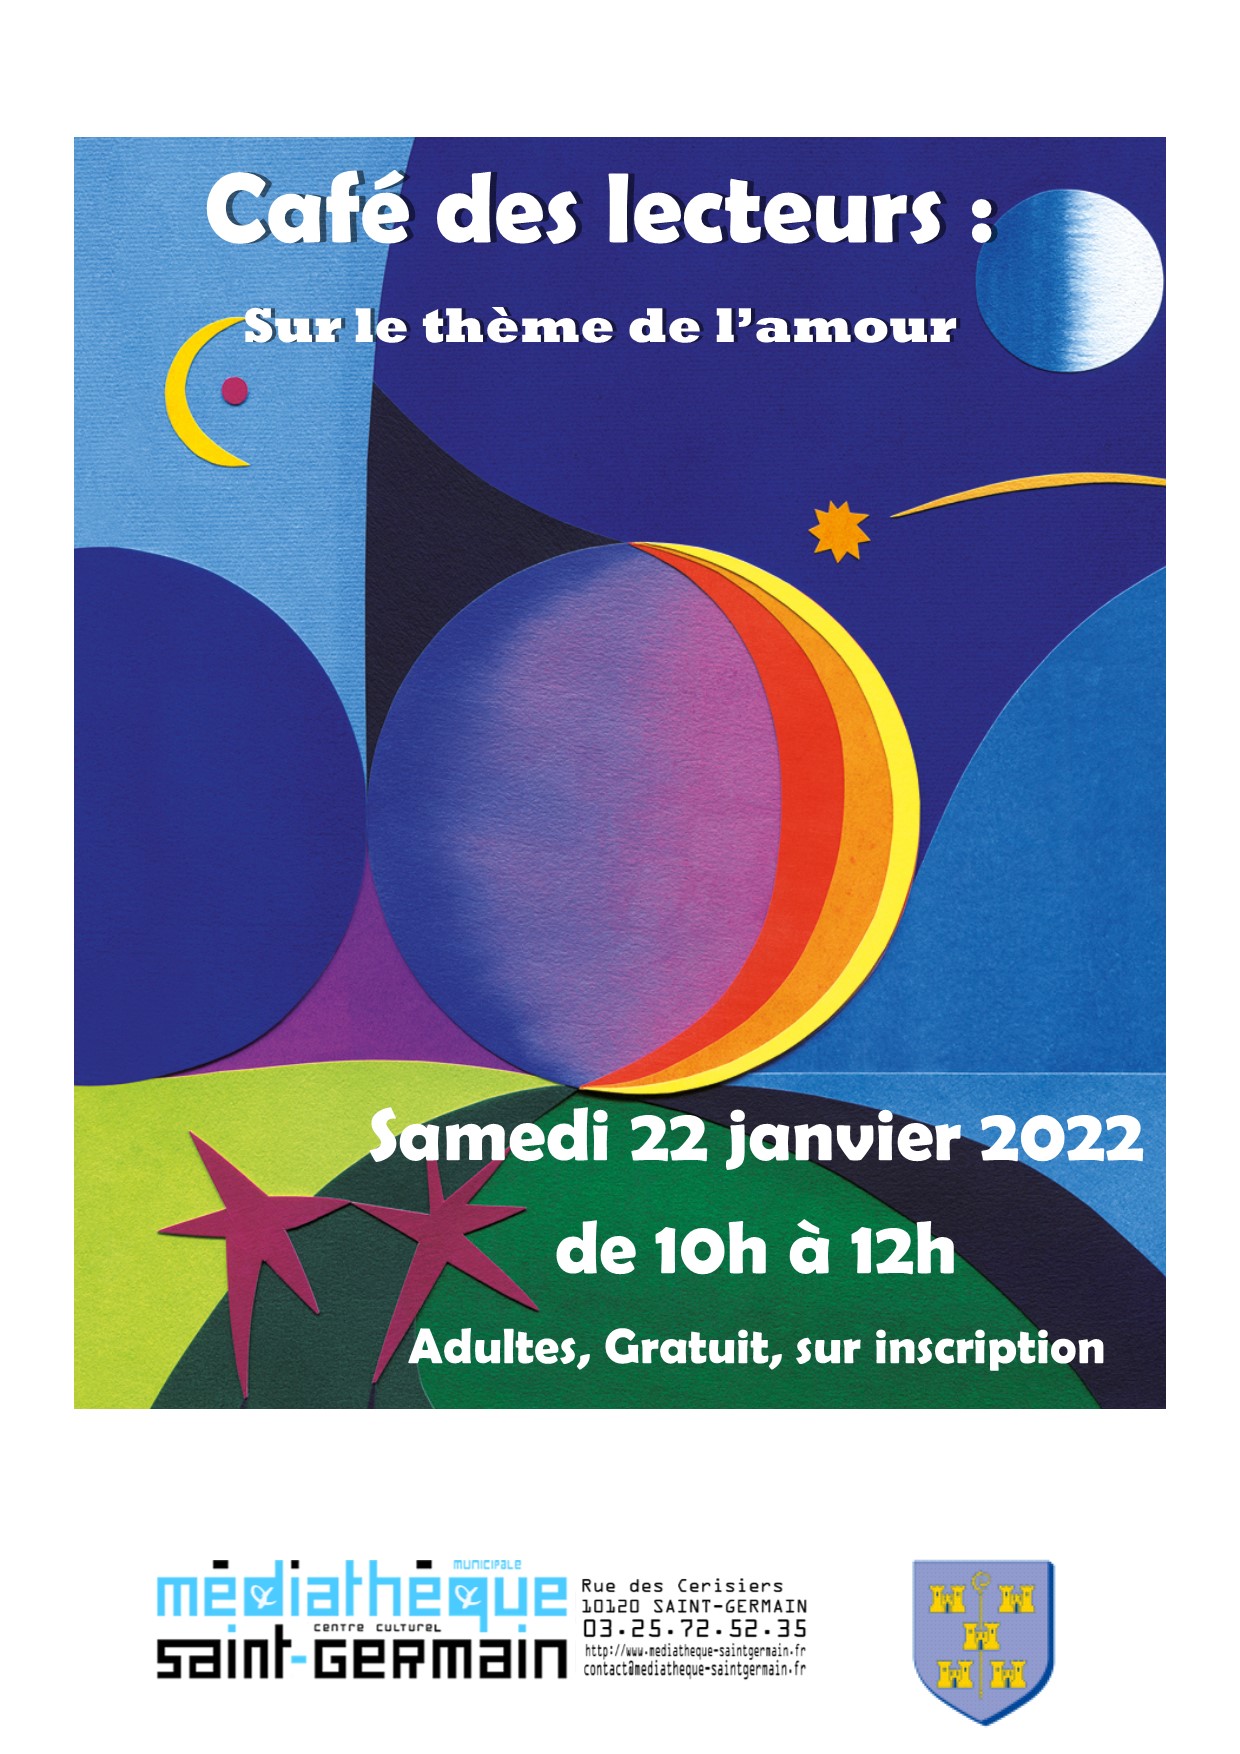 Café des lecteurs Samedi 22 janvier 2022 à 10H